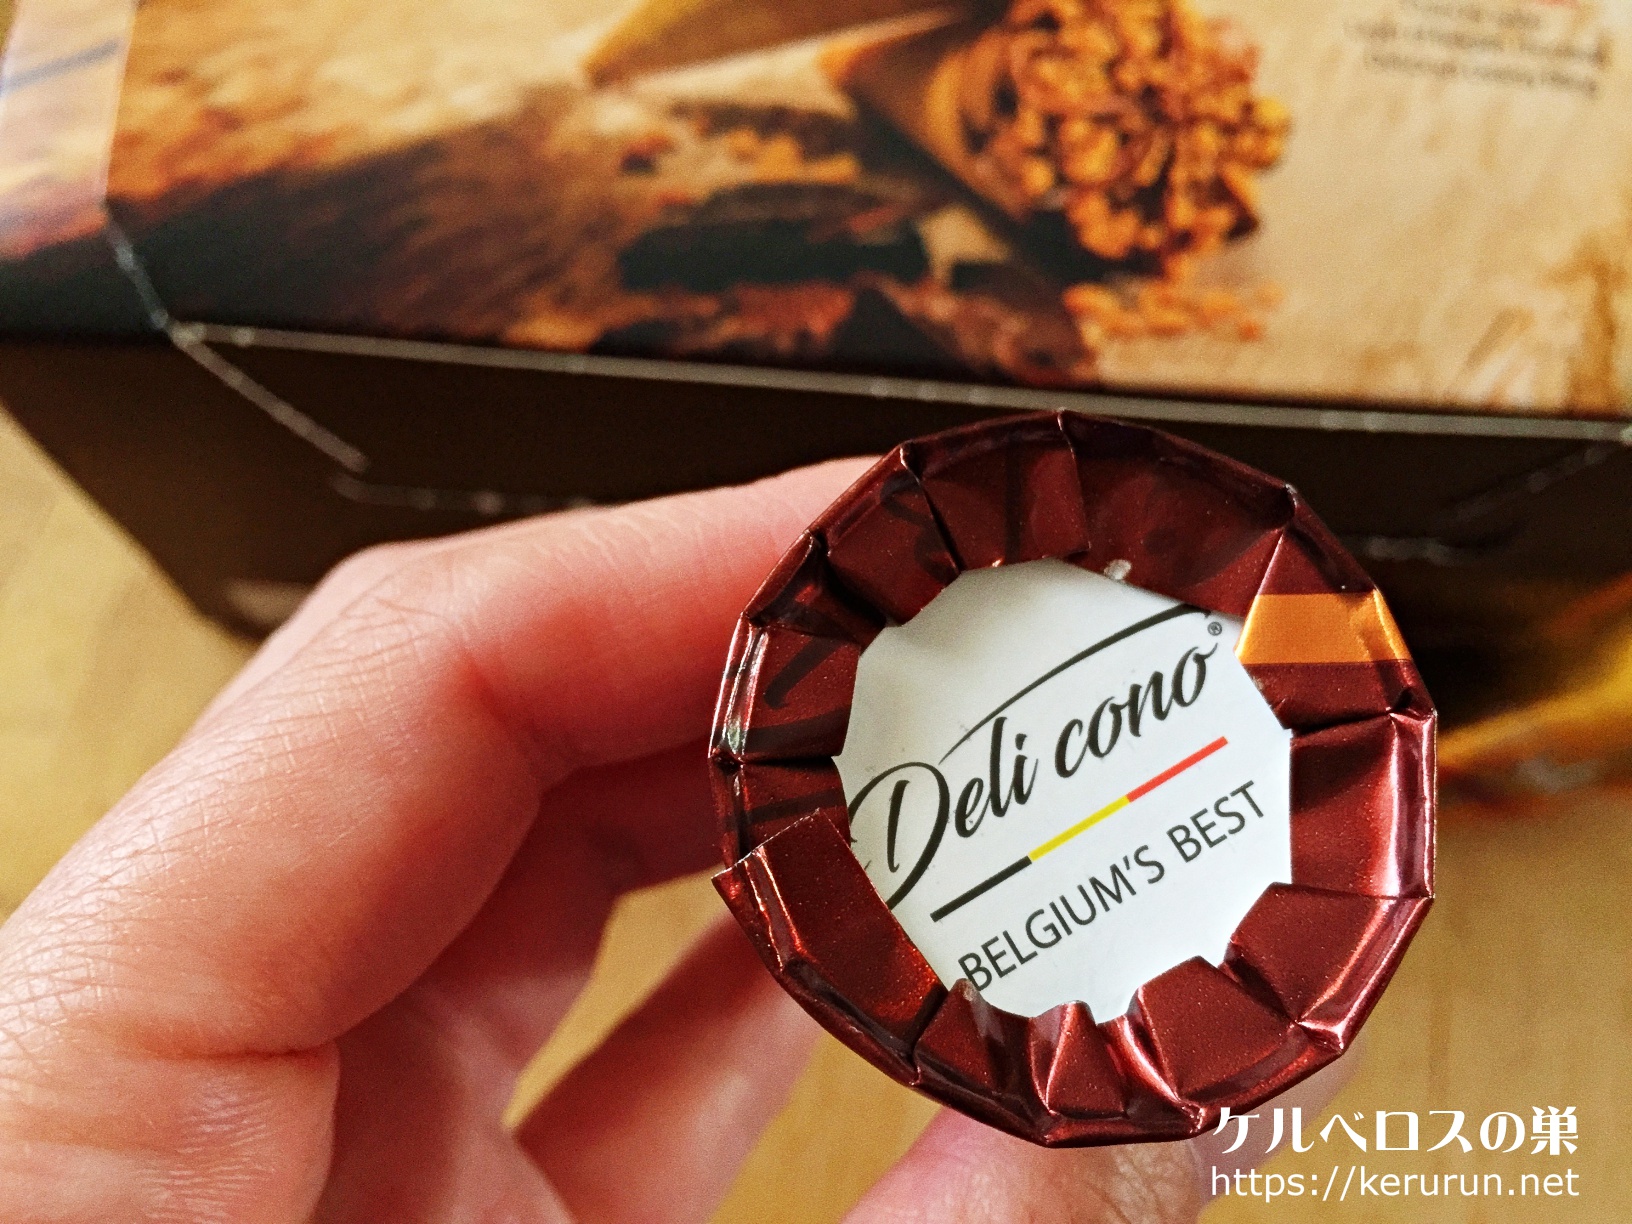 【コストコ】Deli cono（デリコノ）チョココーンズ